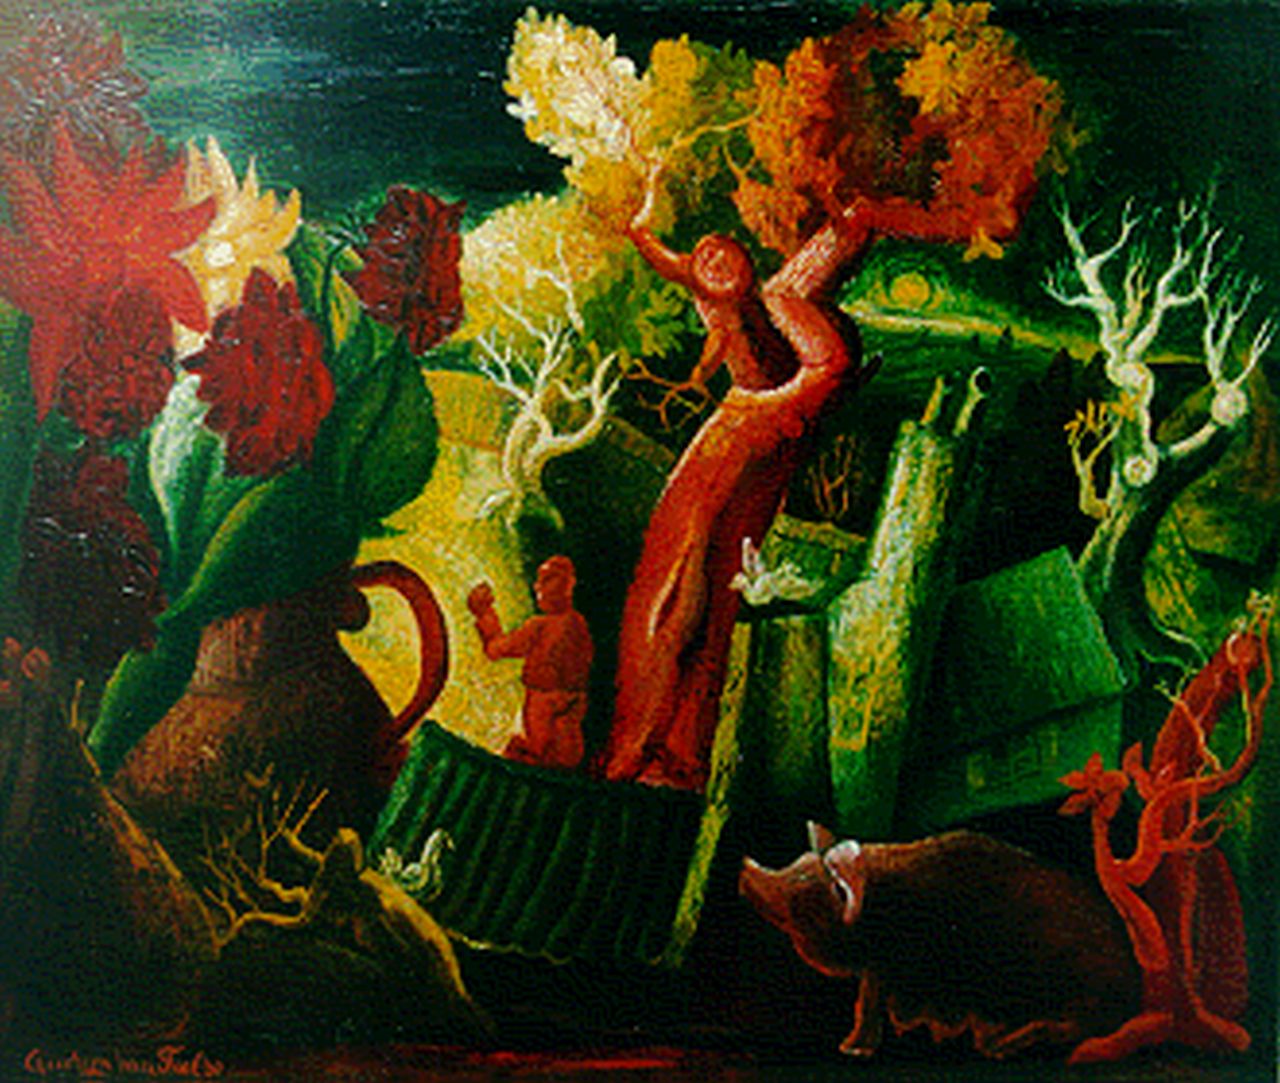 Tiel Q.M.A. van | Quirijn Martinus Adrianus 'Quiryn' van Tiel, Boerderij met varkentje in de herfst, olieverf op doek 66,4 x 80,4 cm, gesigneerd linksonder en gedateerd '36